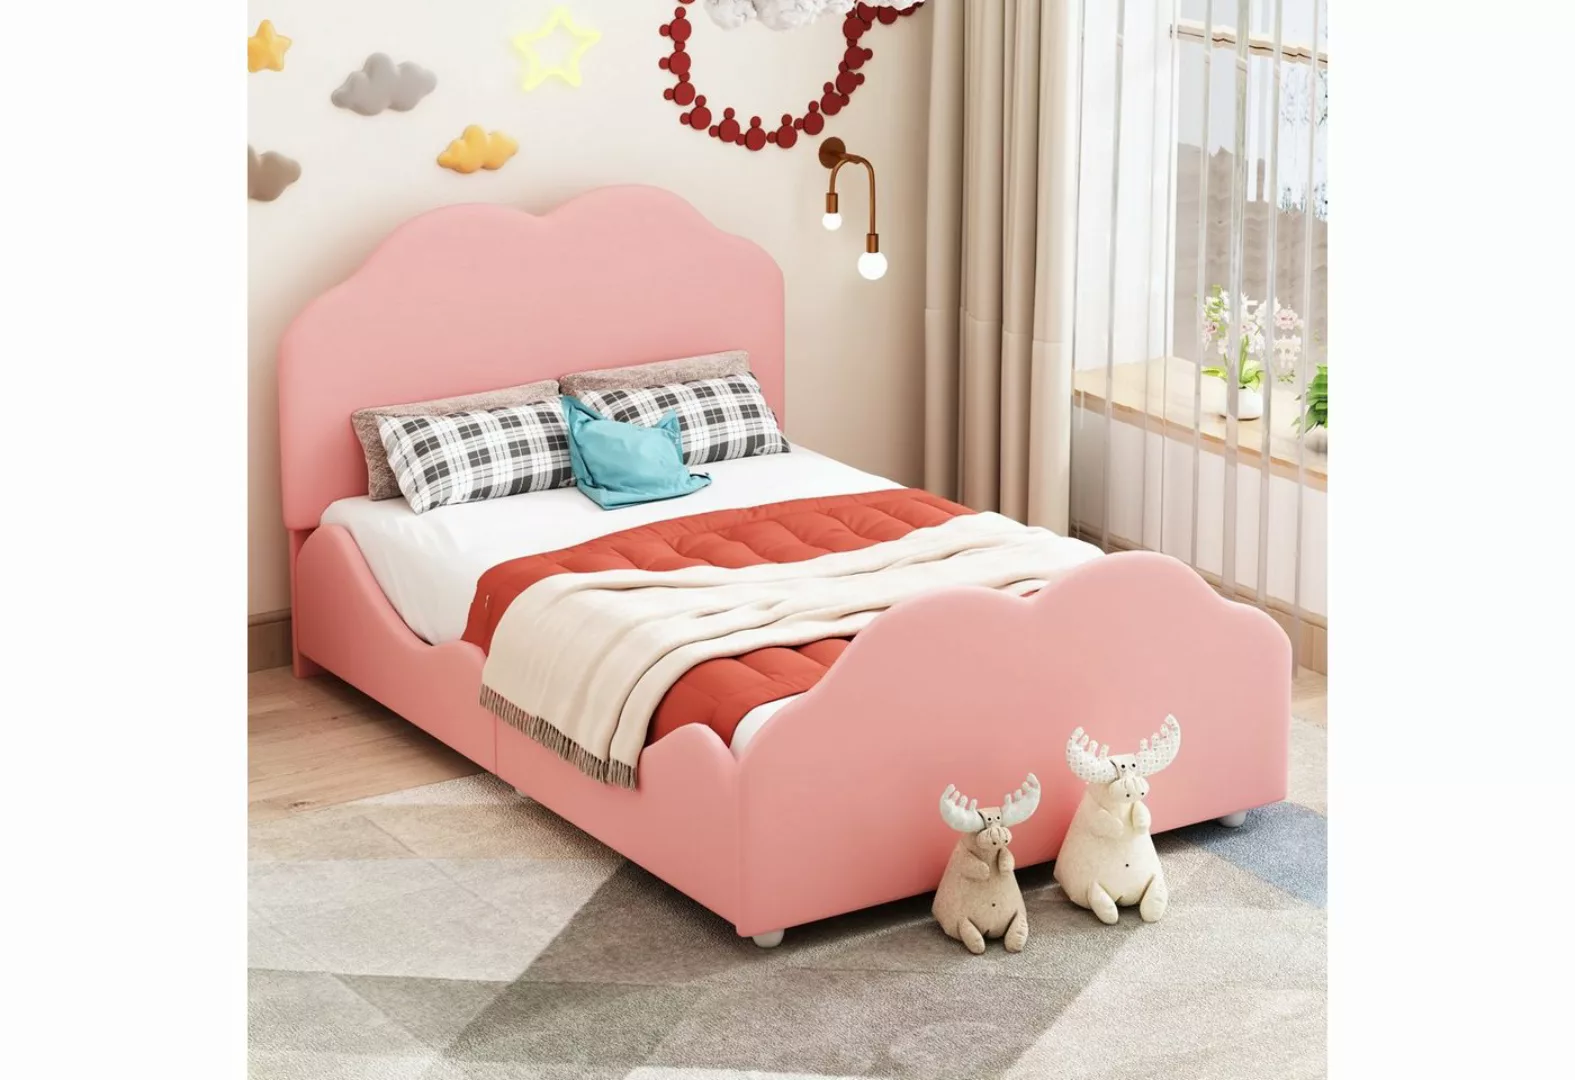 Ulife Kinderbett Polsterbett, Einzelbett, 90x200cm, beige, rosa, mit wolken günstig online kaufen